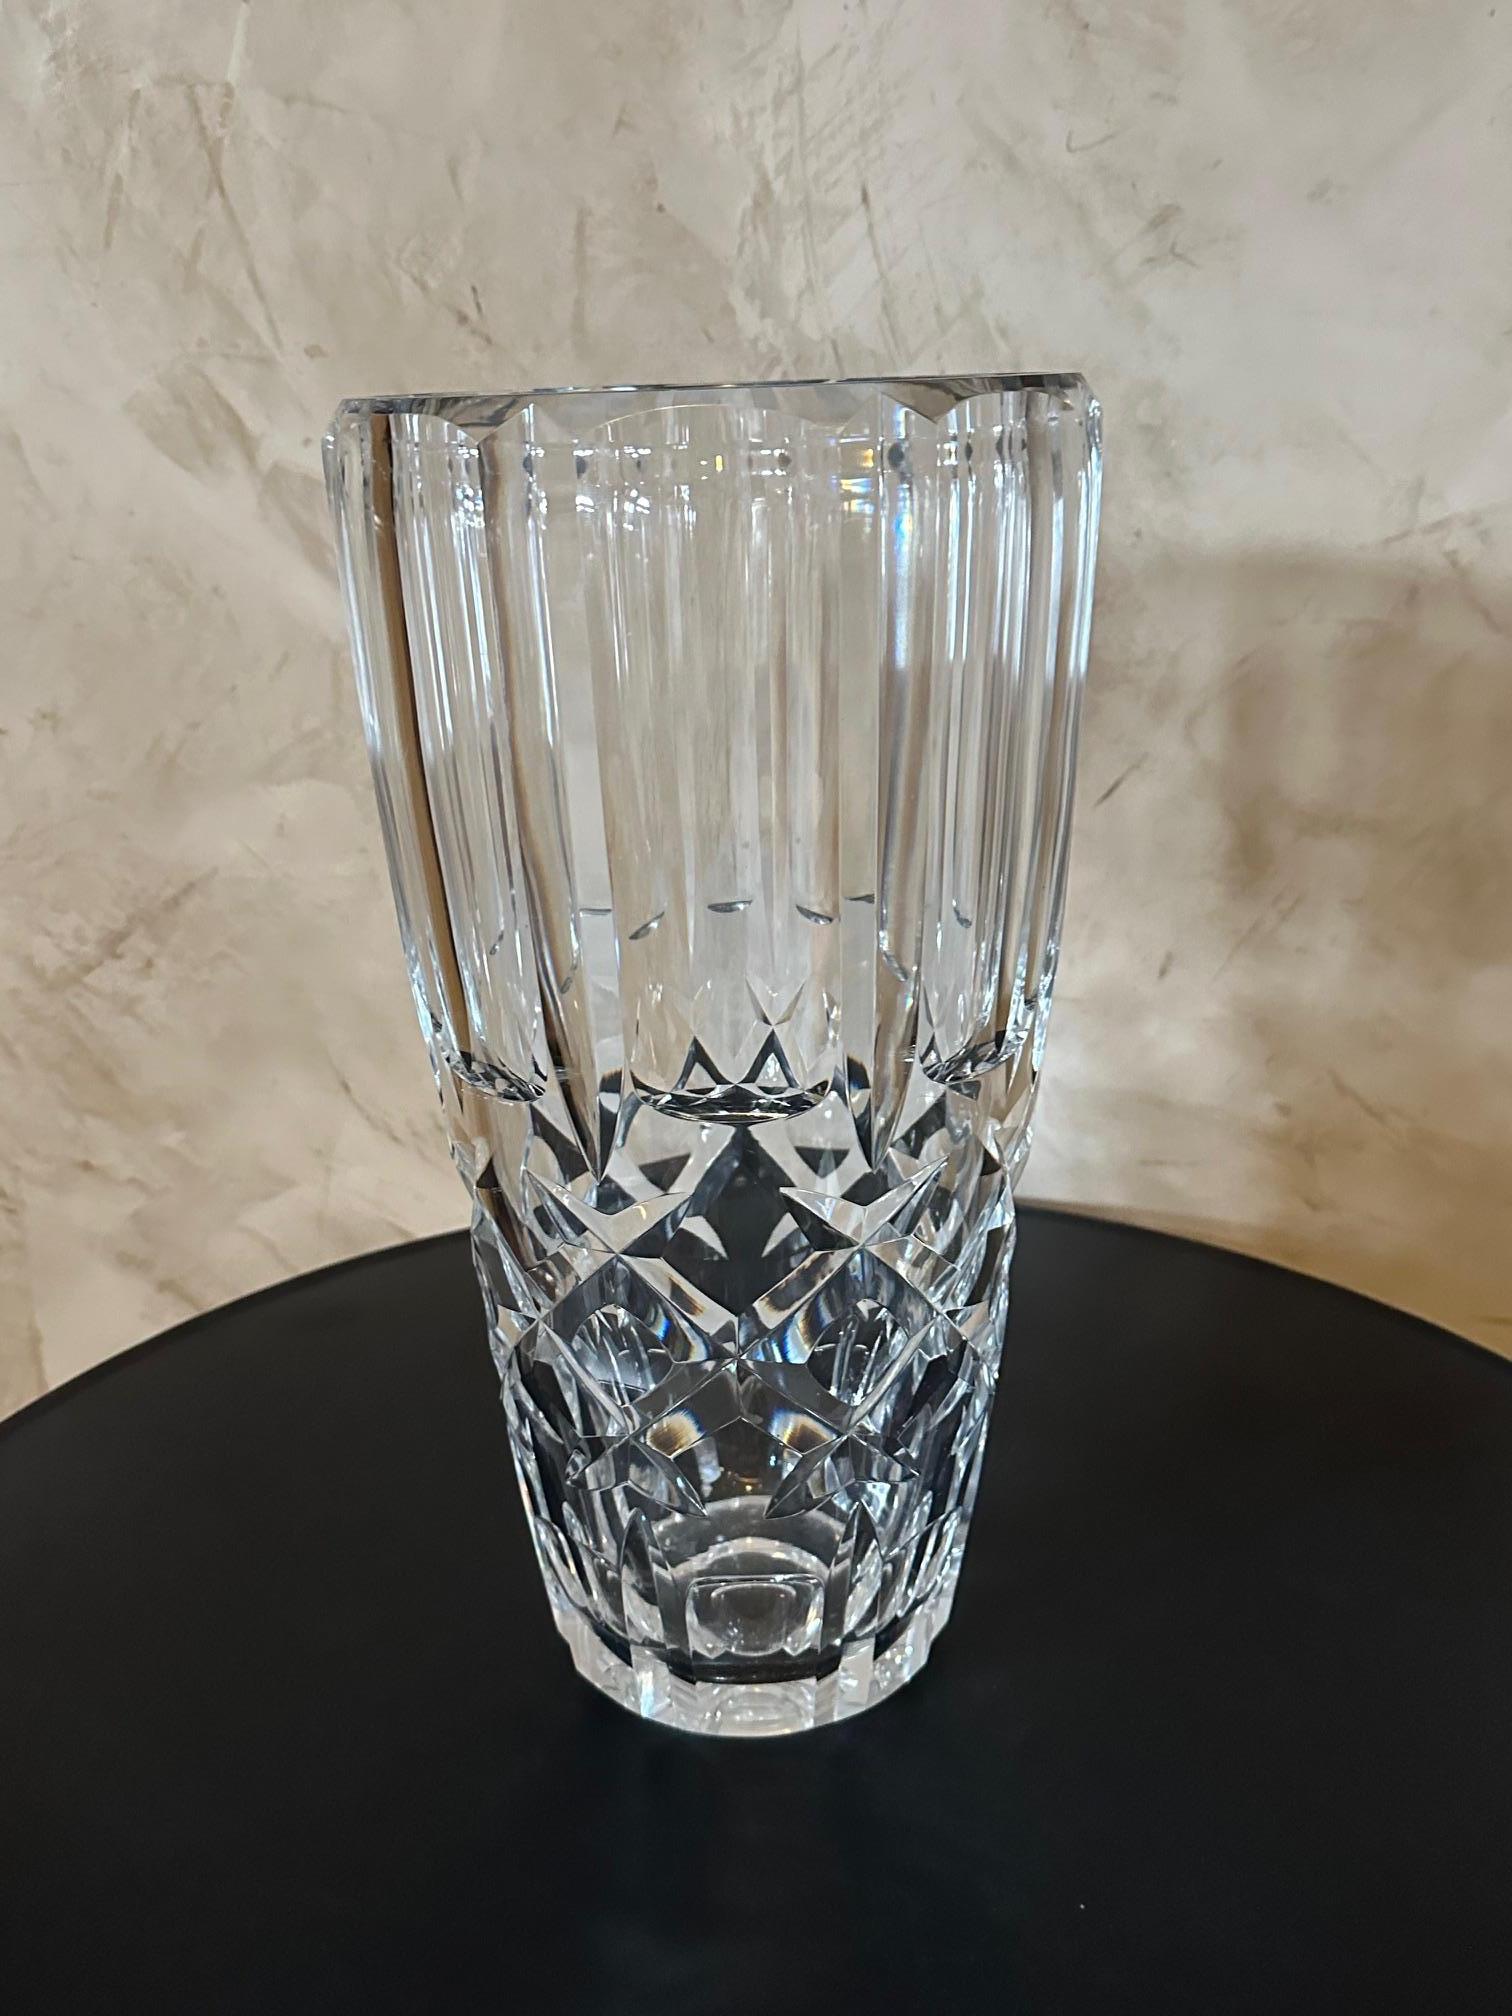 Très beau et grand vase en cristal signé par Schneider. Très beaux détails de gravure sur cristal.
Idéal pour décorer avec un grand bouquet de fleurs. Très bon état et superbe qualité.